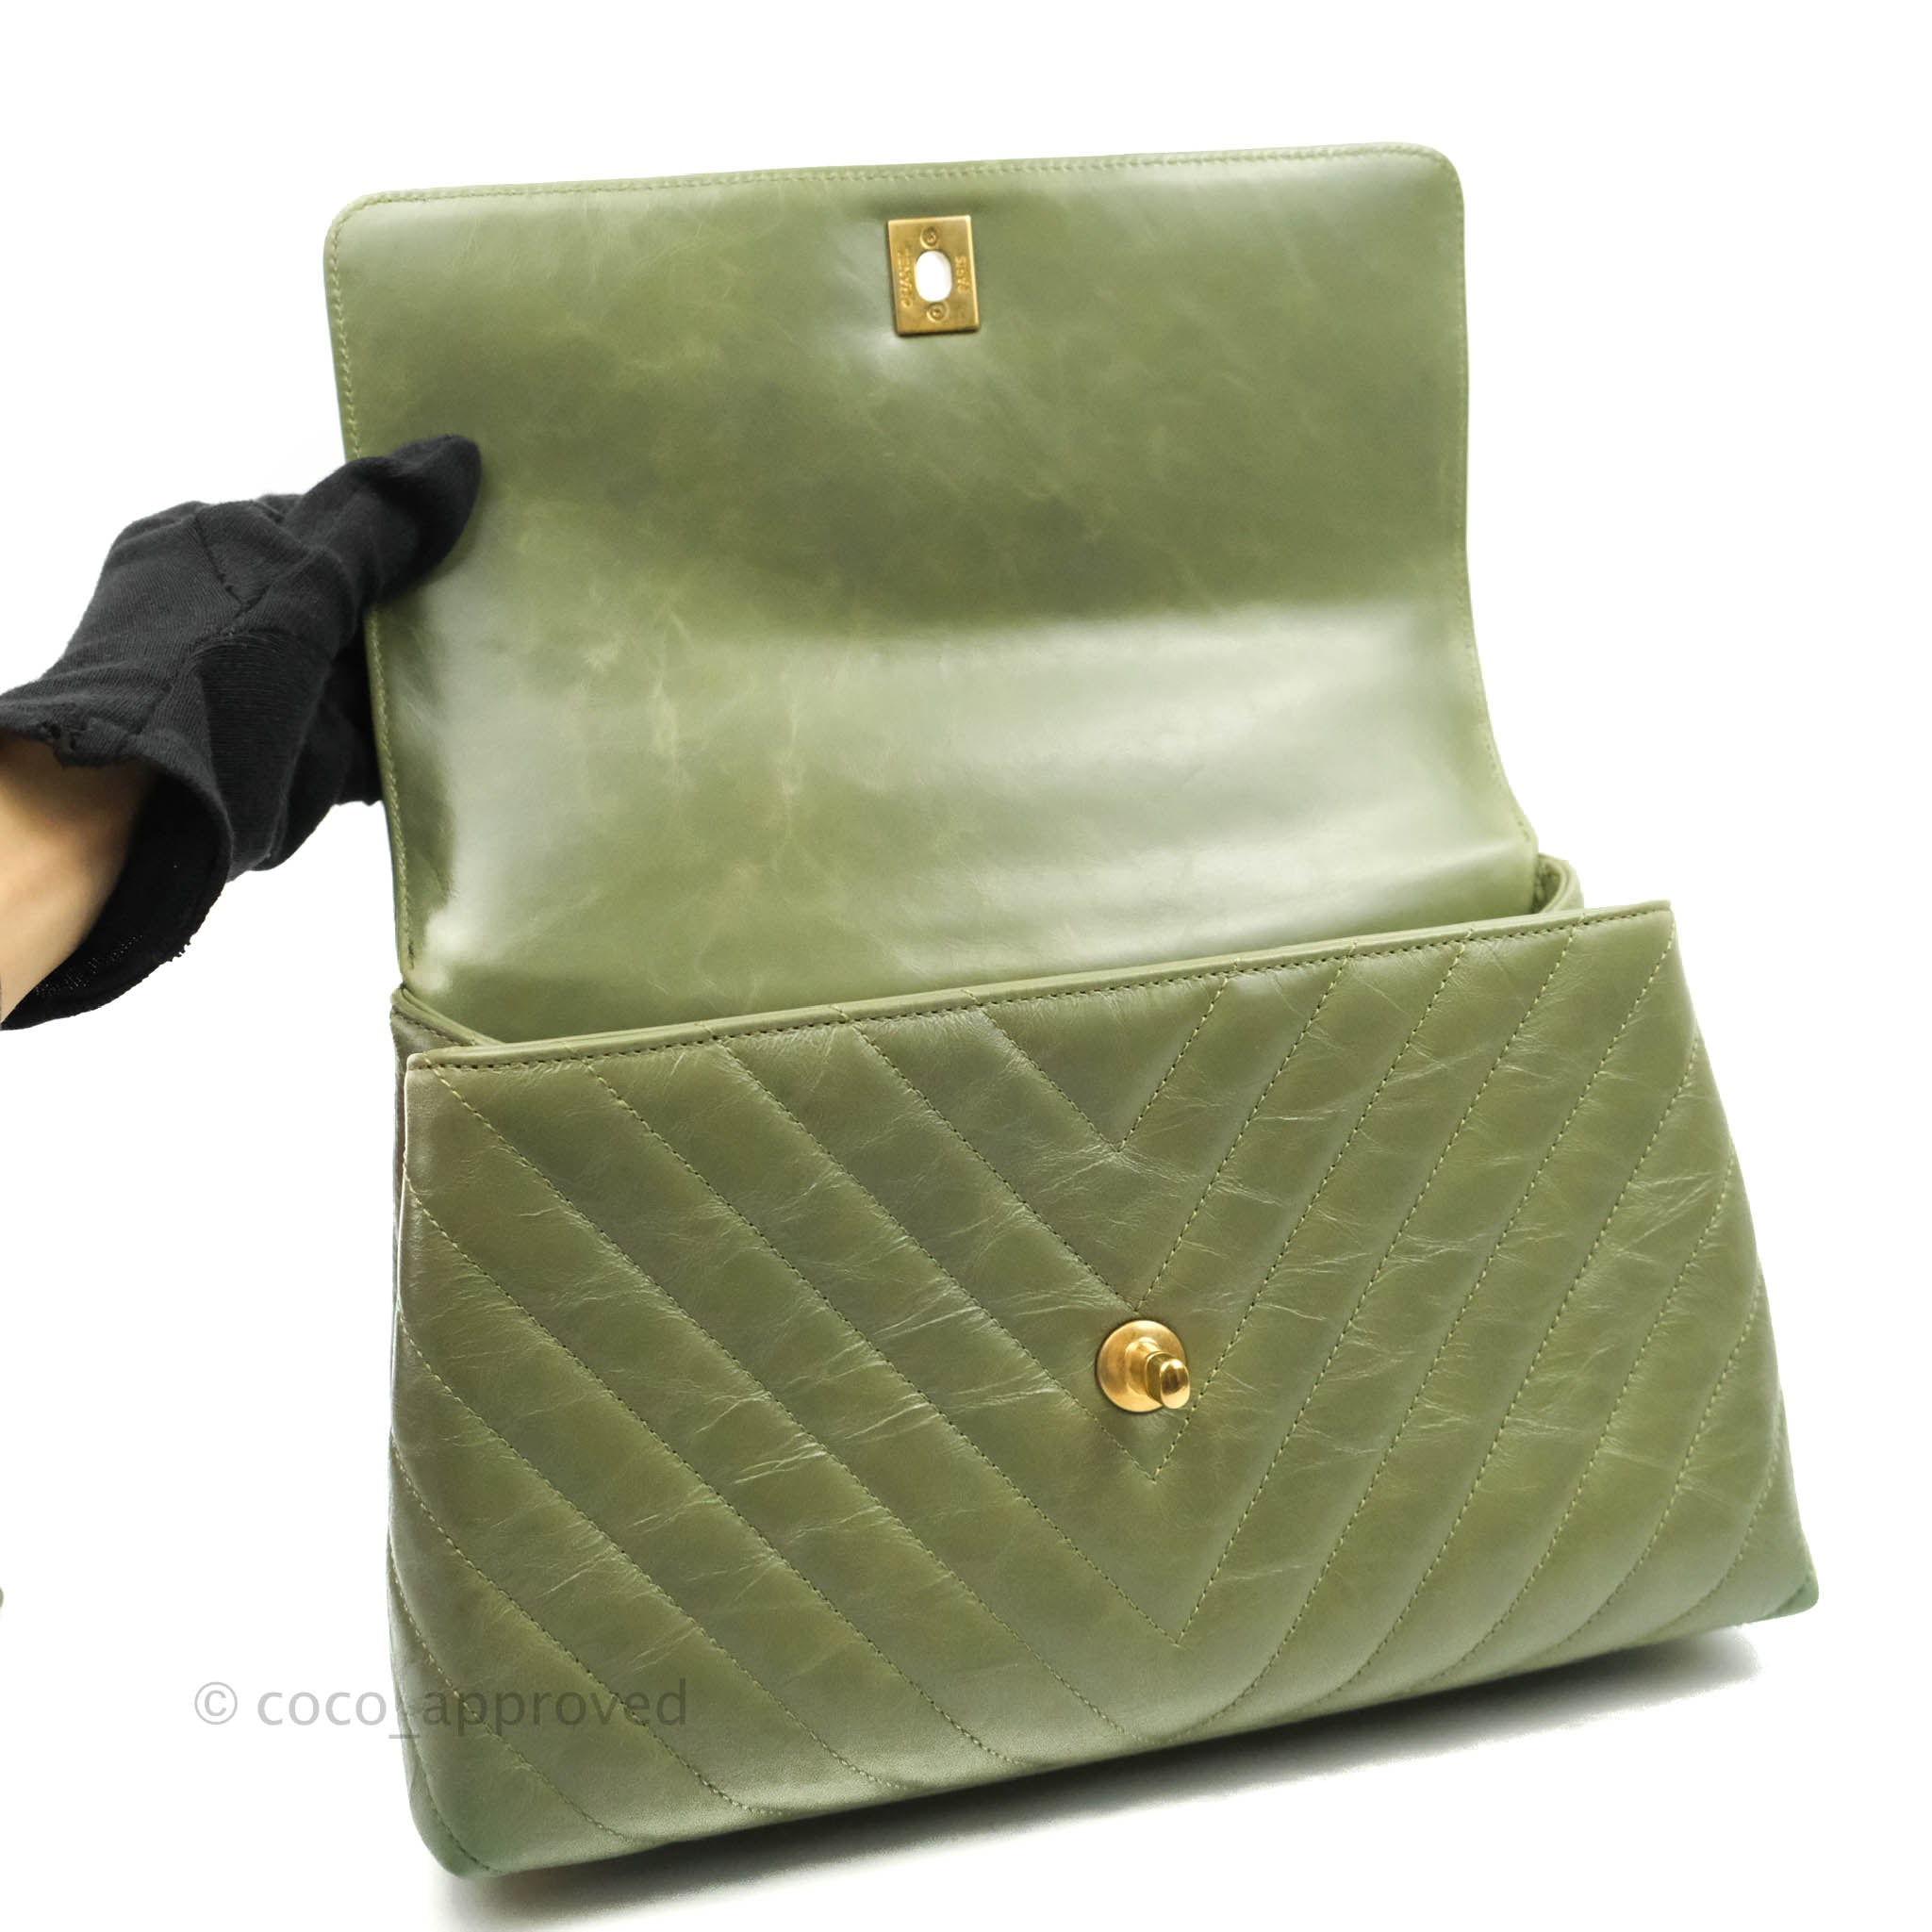 H A R L E M + B E S P O K E: ☞ INTRODUCING: The Costco Chanel Bag